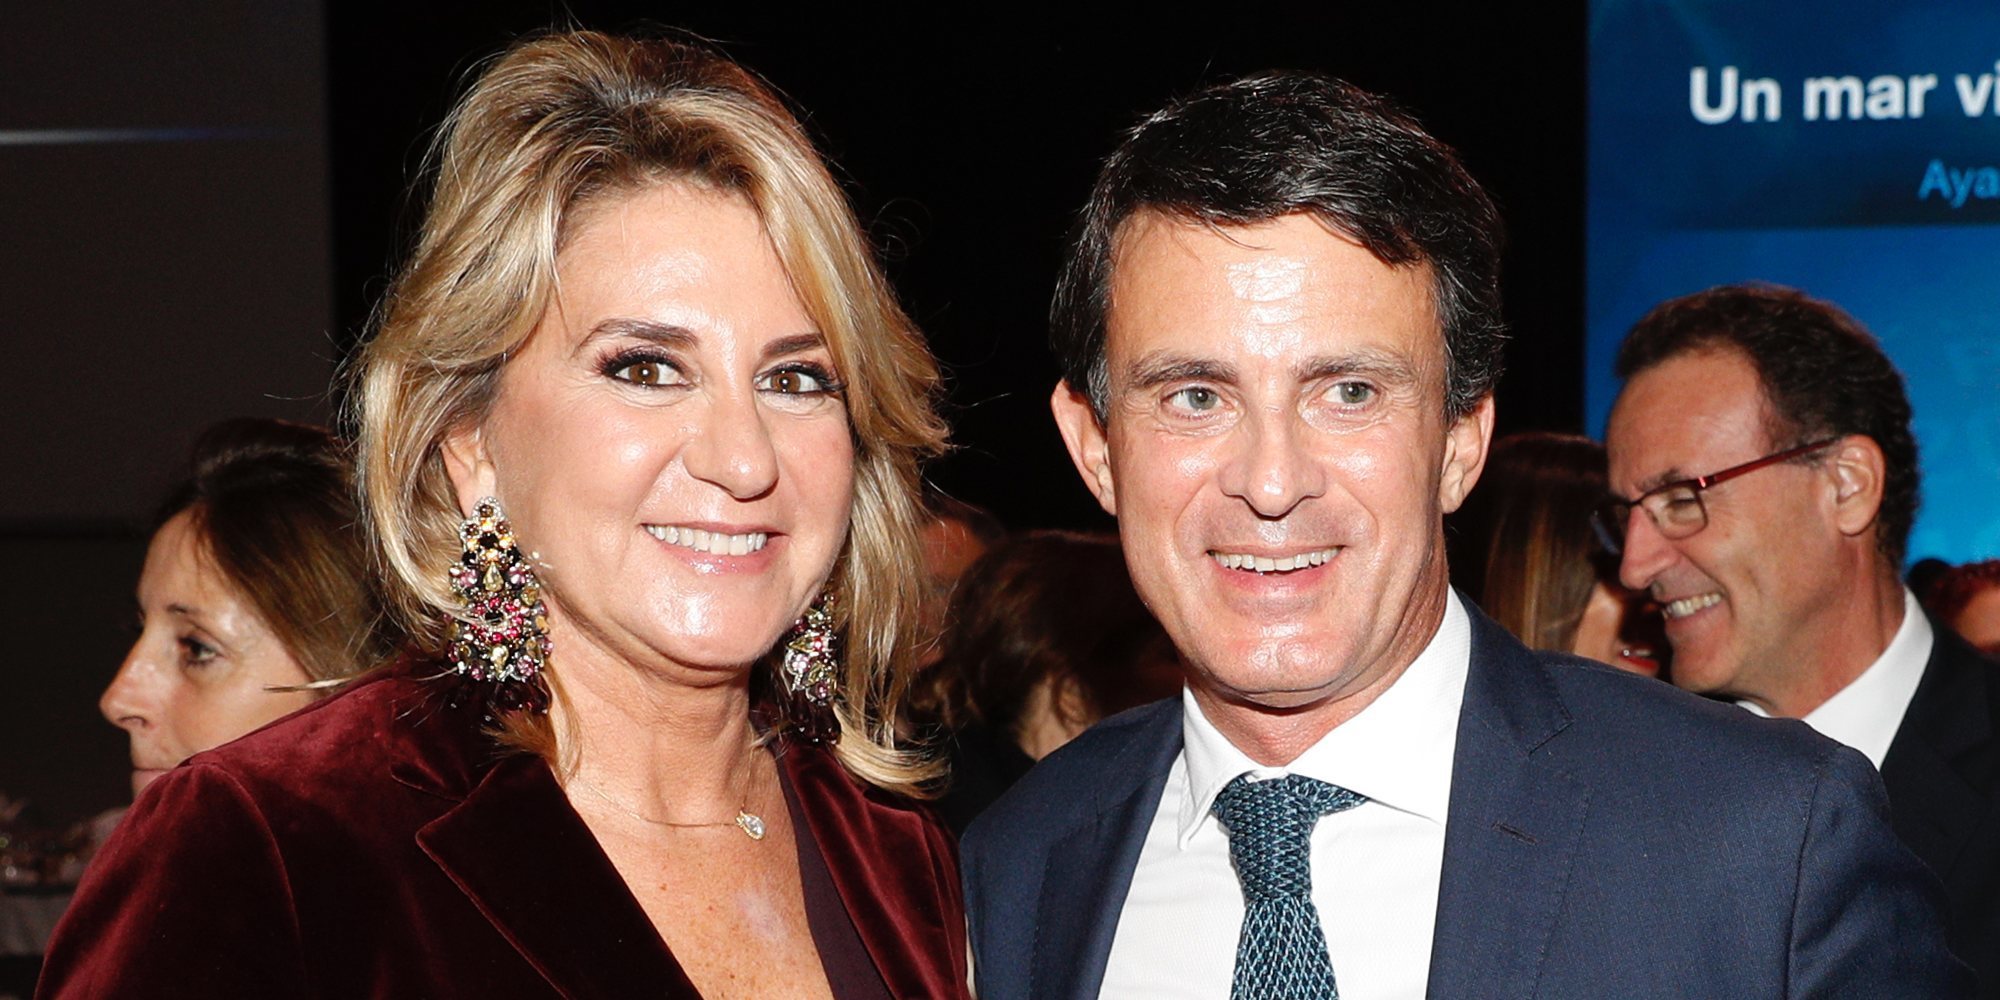 Manuel Valls anuncia su compromiso con Susana Gallardo tras un año de relación